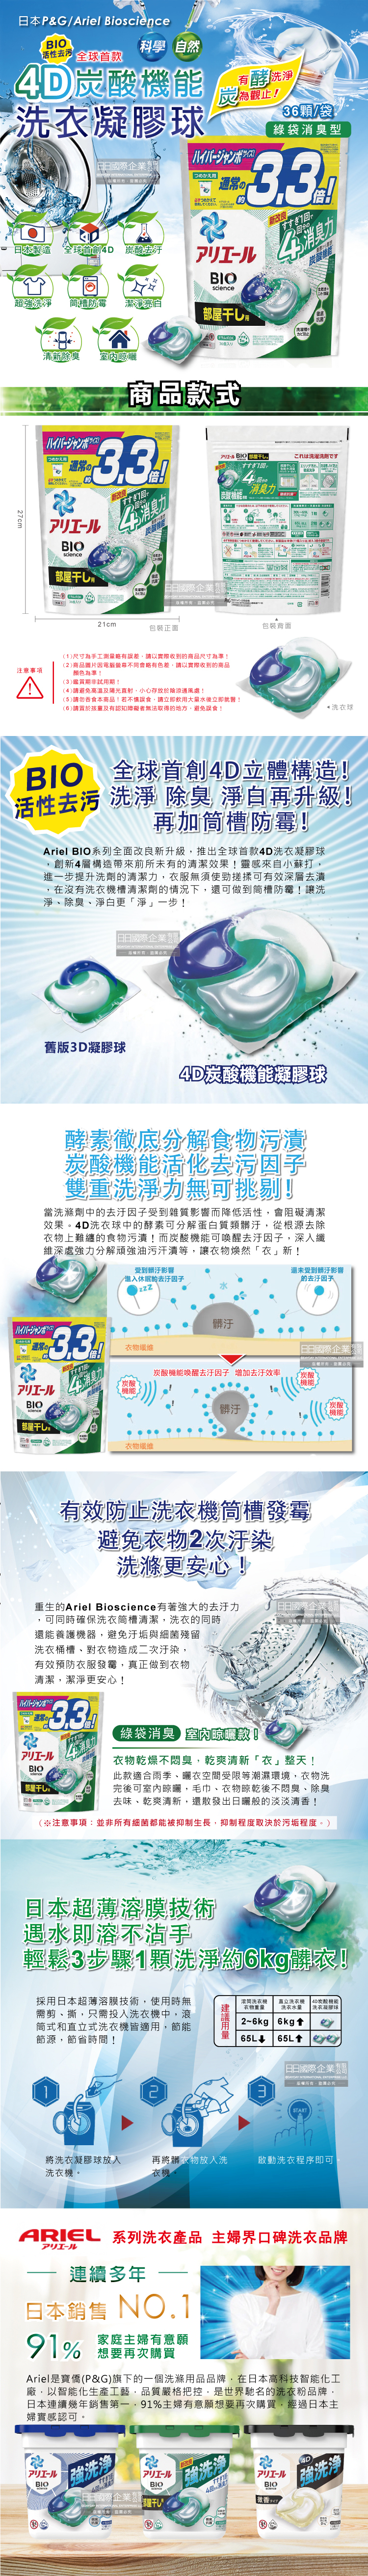 (清潔-衣物)日本PG-4D炭酸機能洗衣凝膠球36顆袋裝(介紹圖)